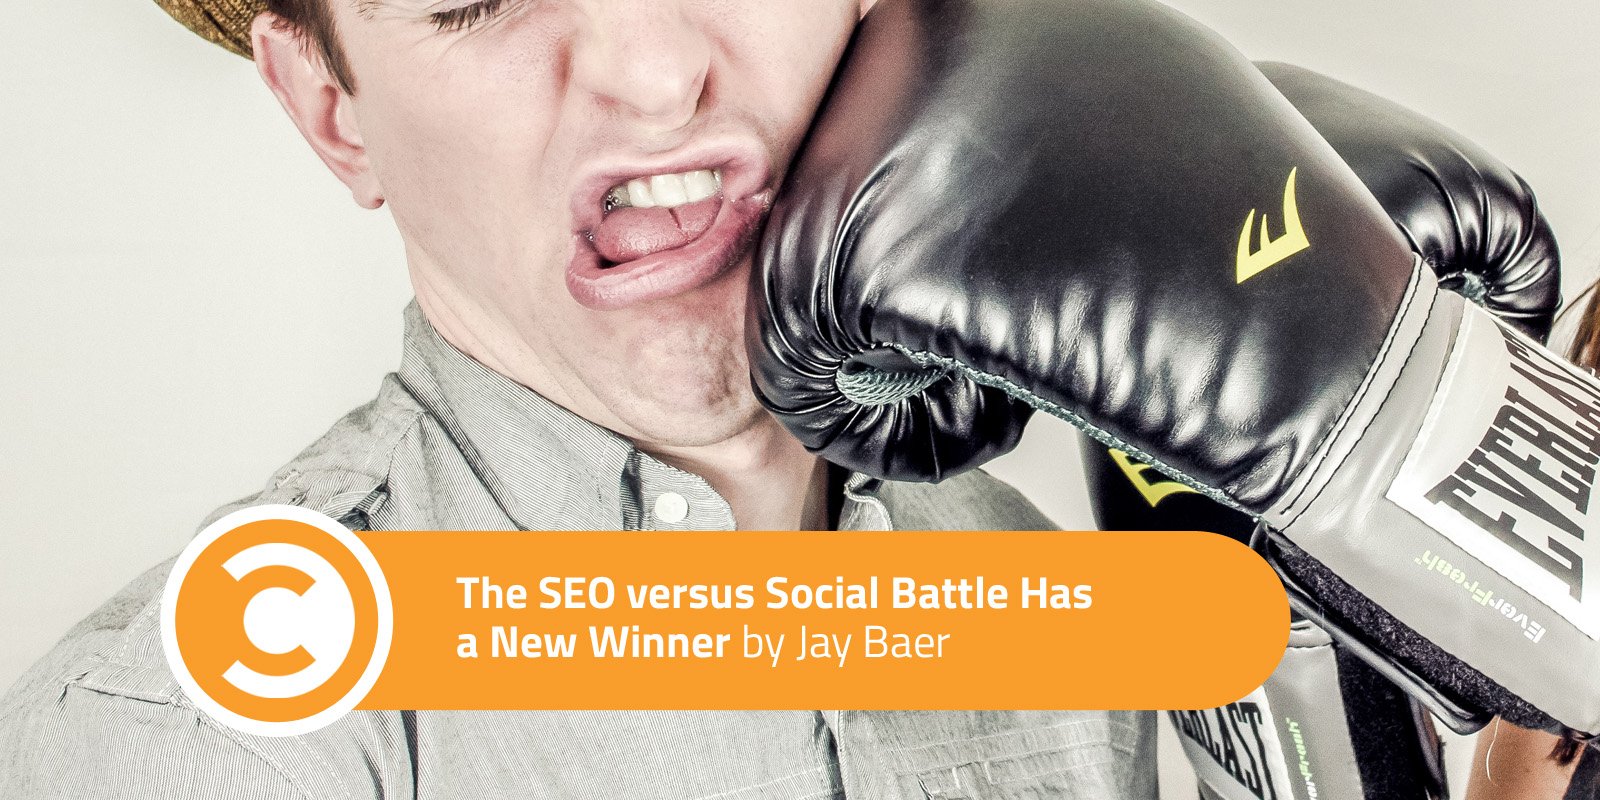 The SEO versus Social Battle Has a New Winner